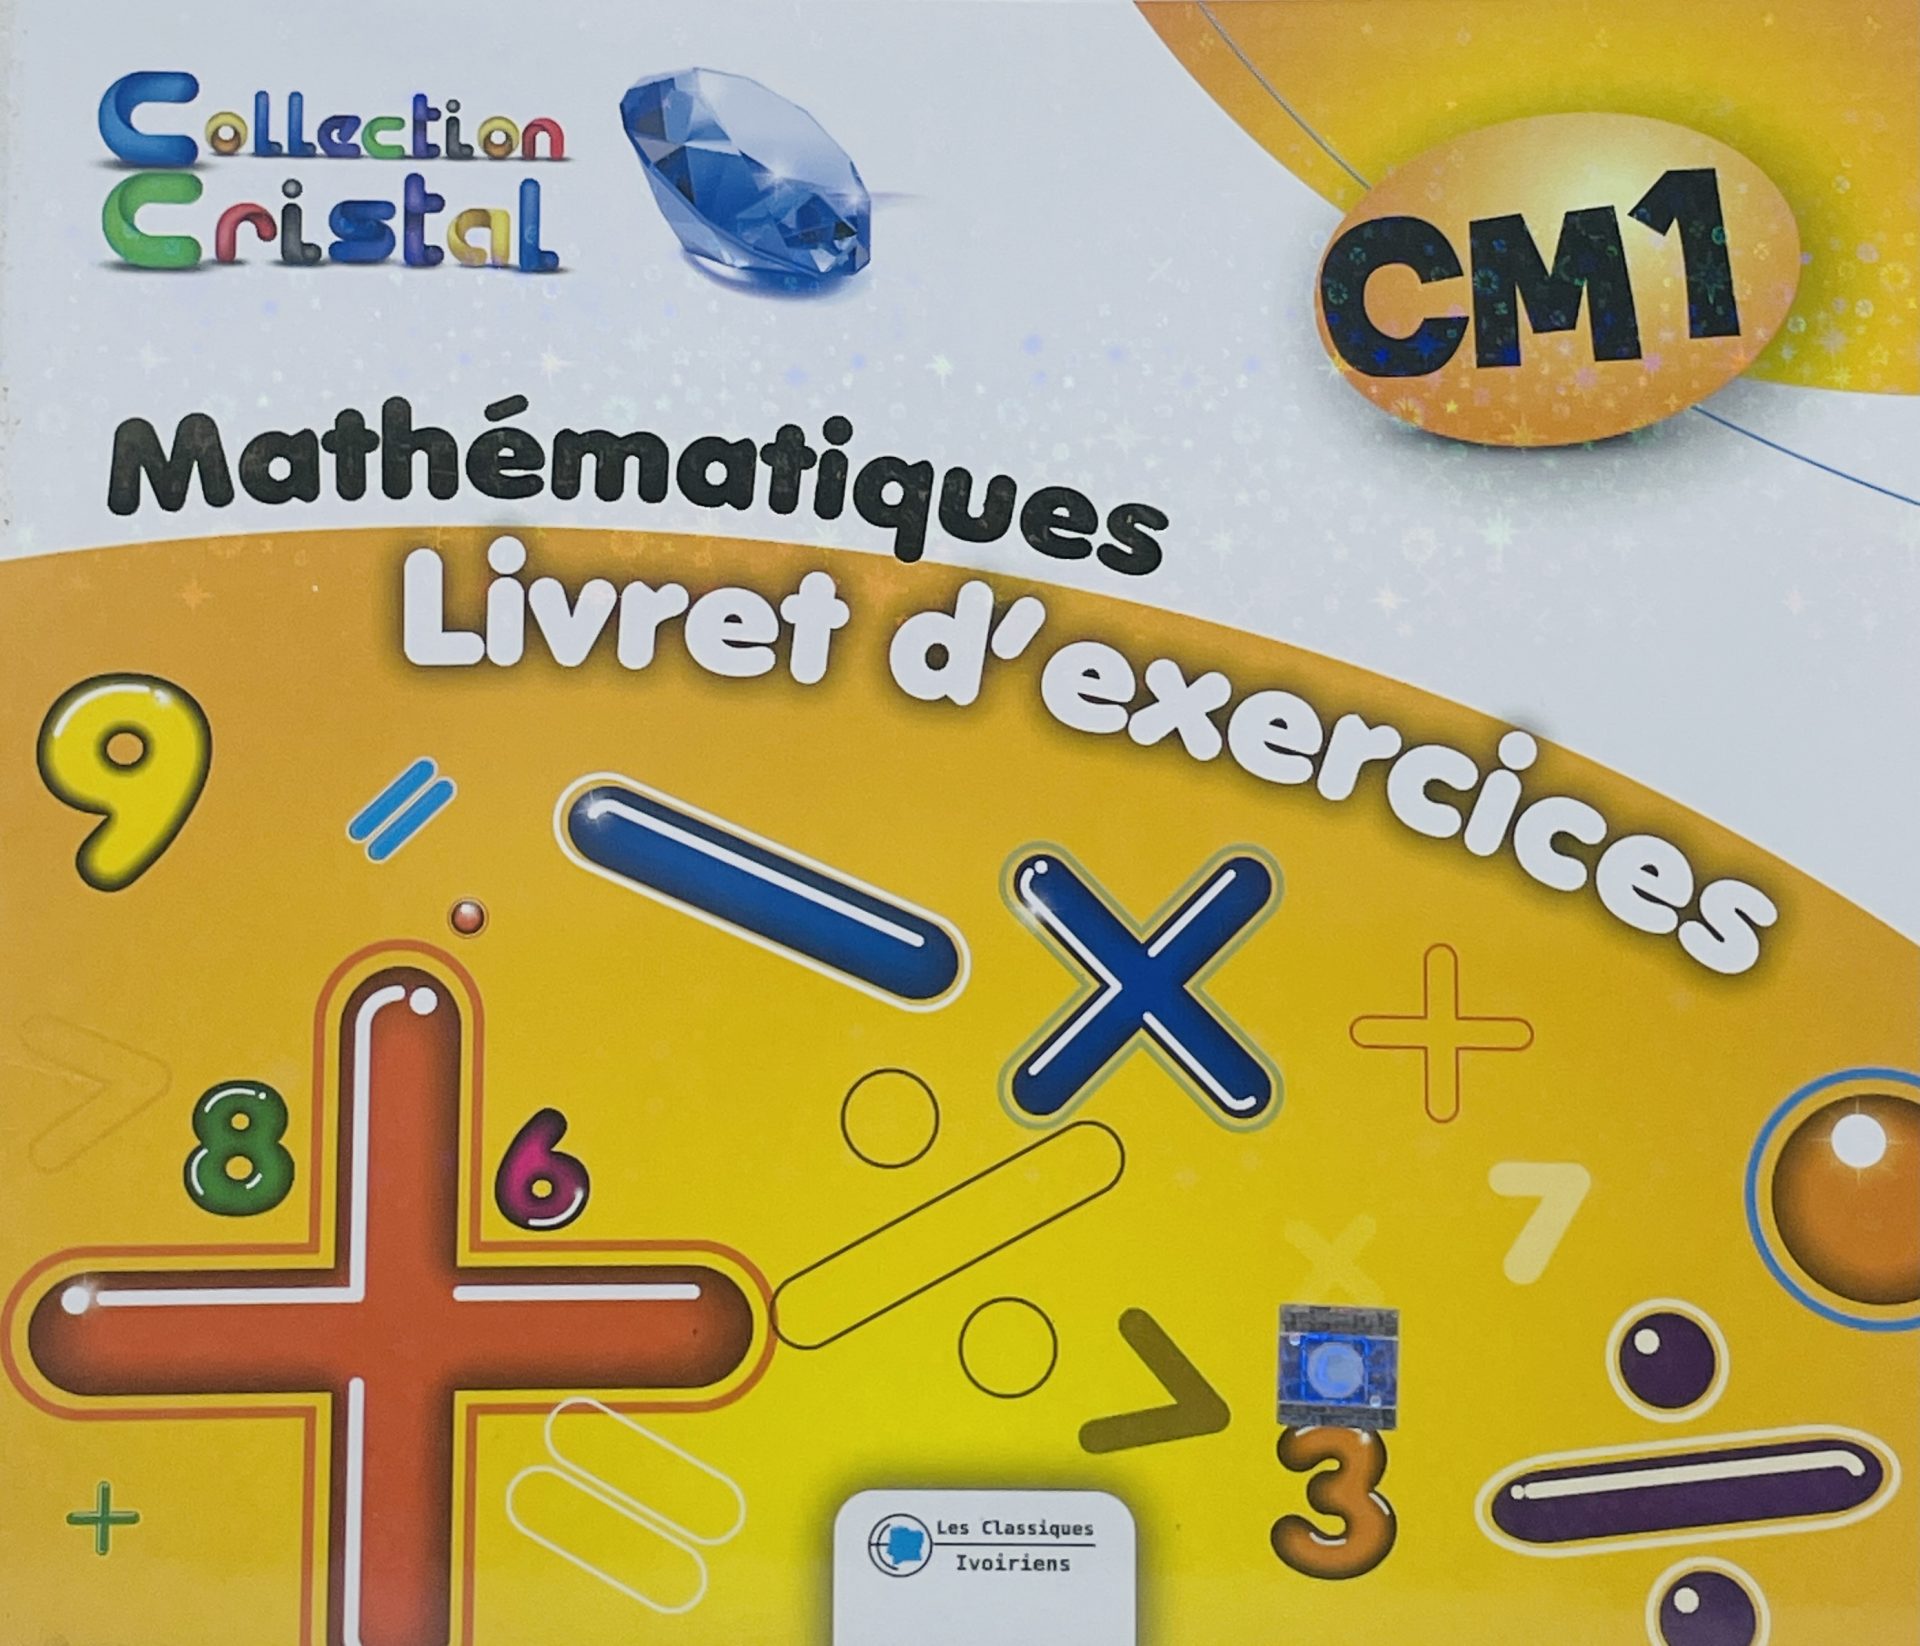 Mon livret d'exercices Mathématiques CM1 (Collection Cristal) - Les Classiques Ivoiriens